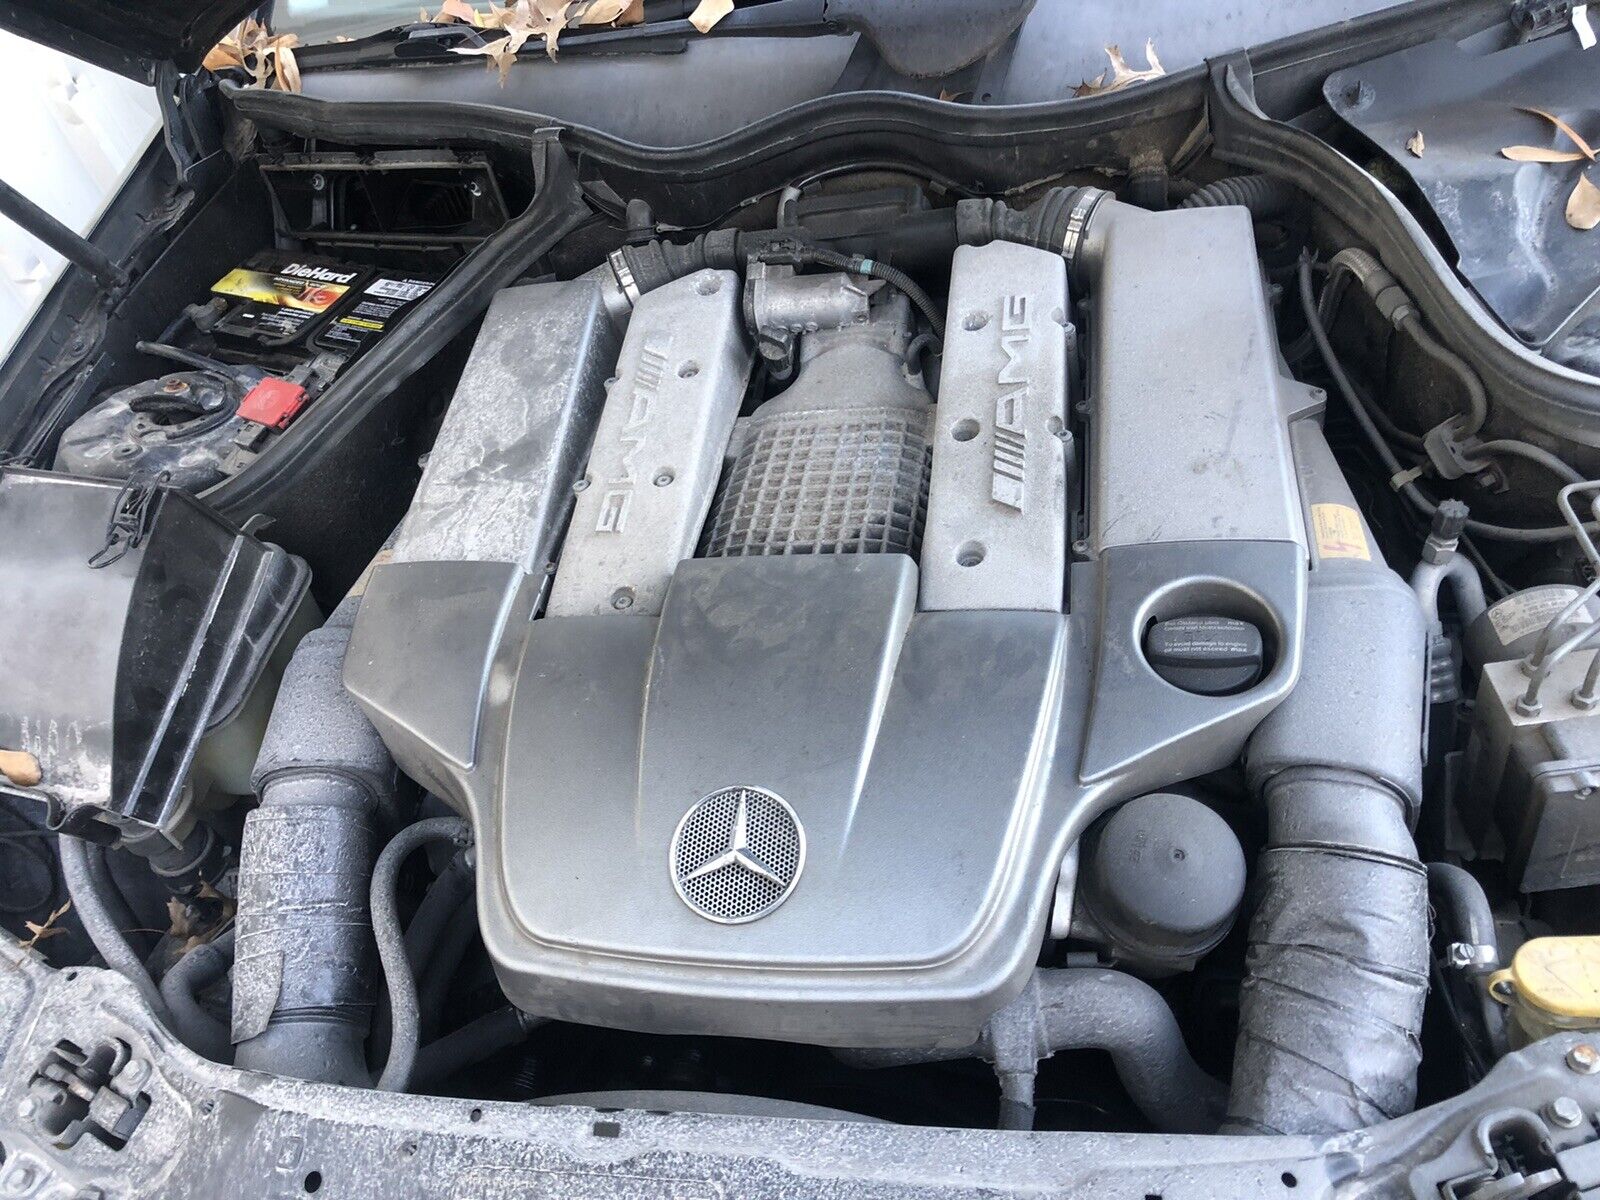 02-2004 Mercedes-Benz W203 R170 SLK32 C32 AMG Motor Engine SUPERCHARGER complete